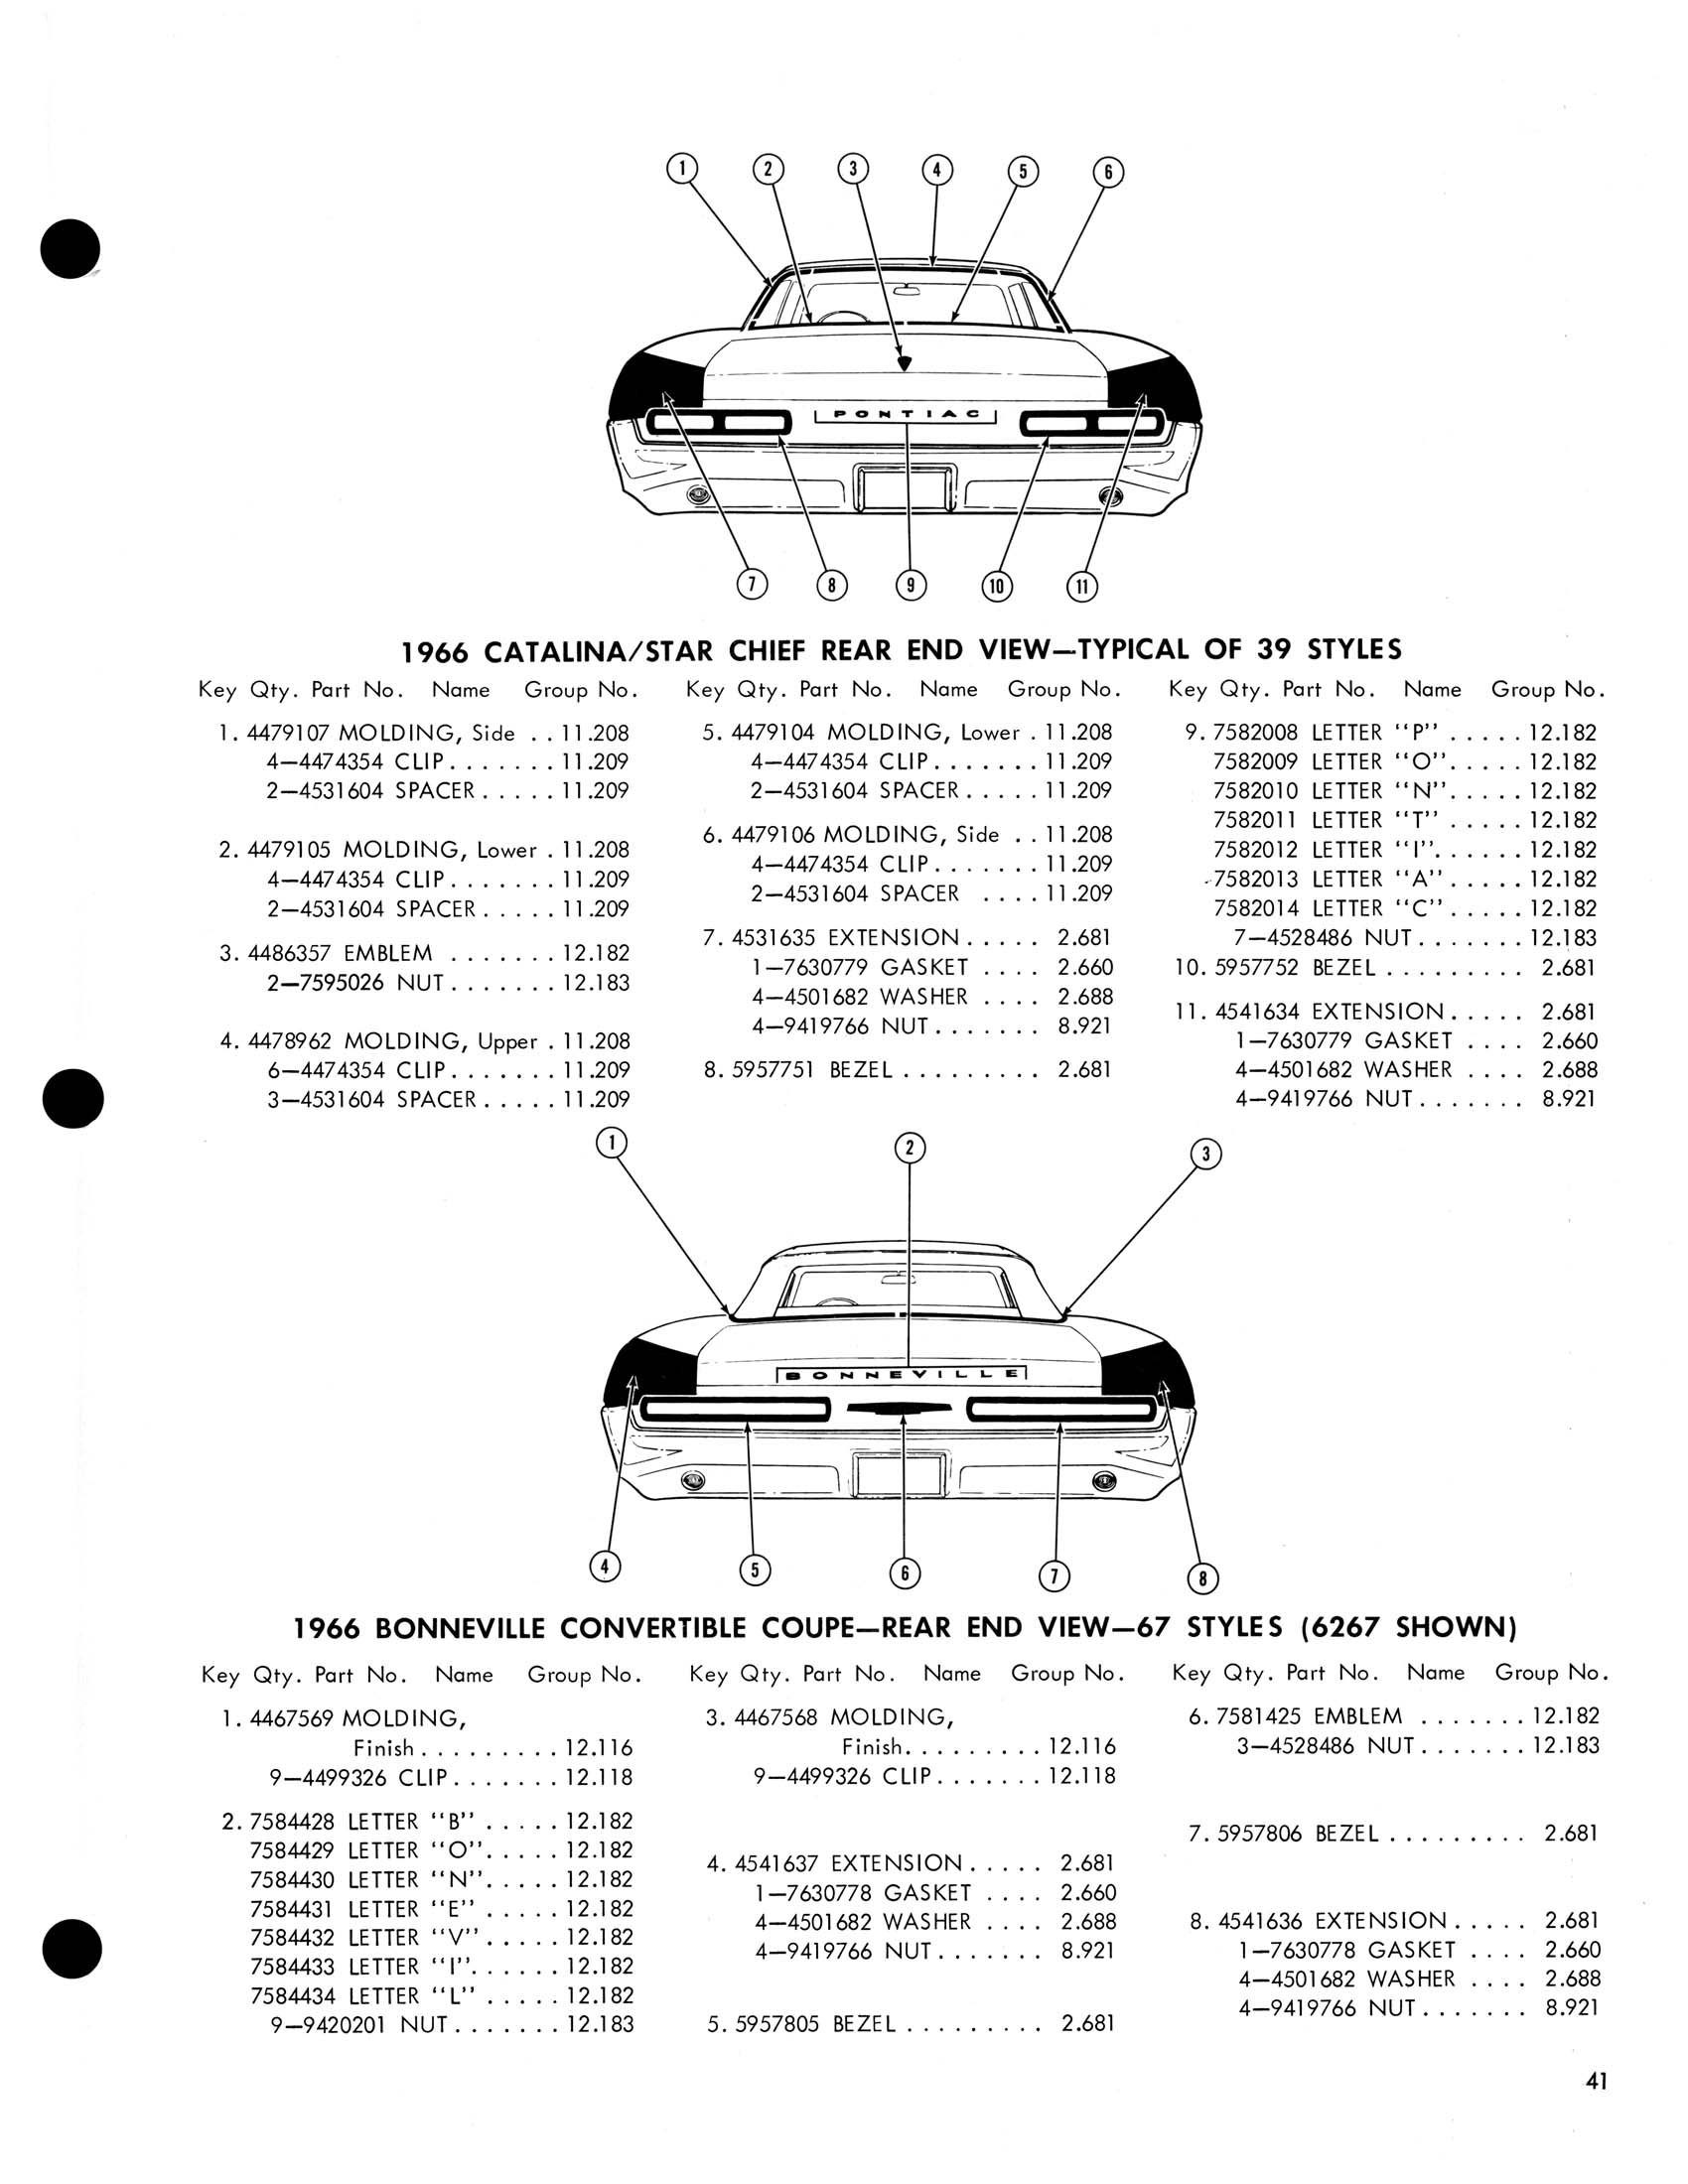 1966_Pontiac_Molding_and_Clip_Catalog-41